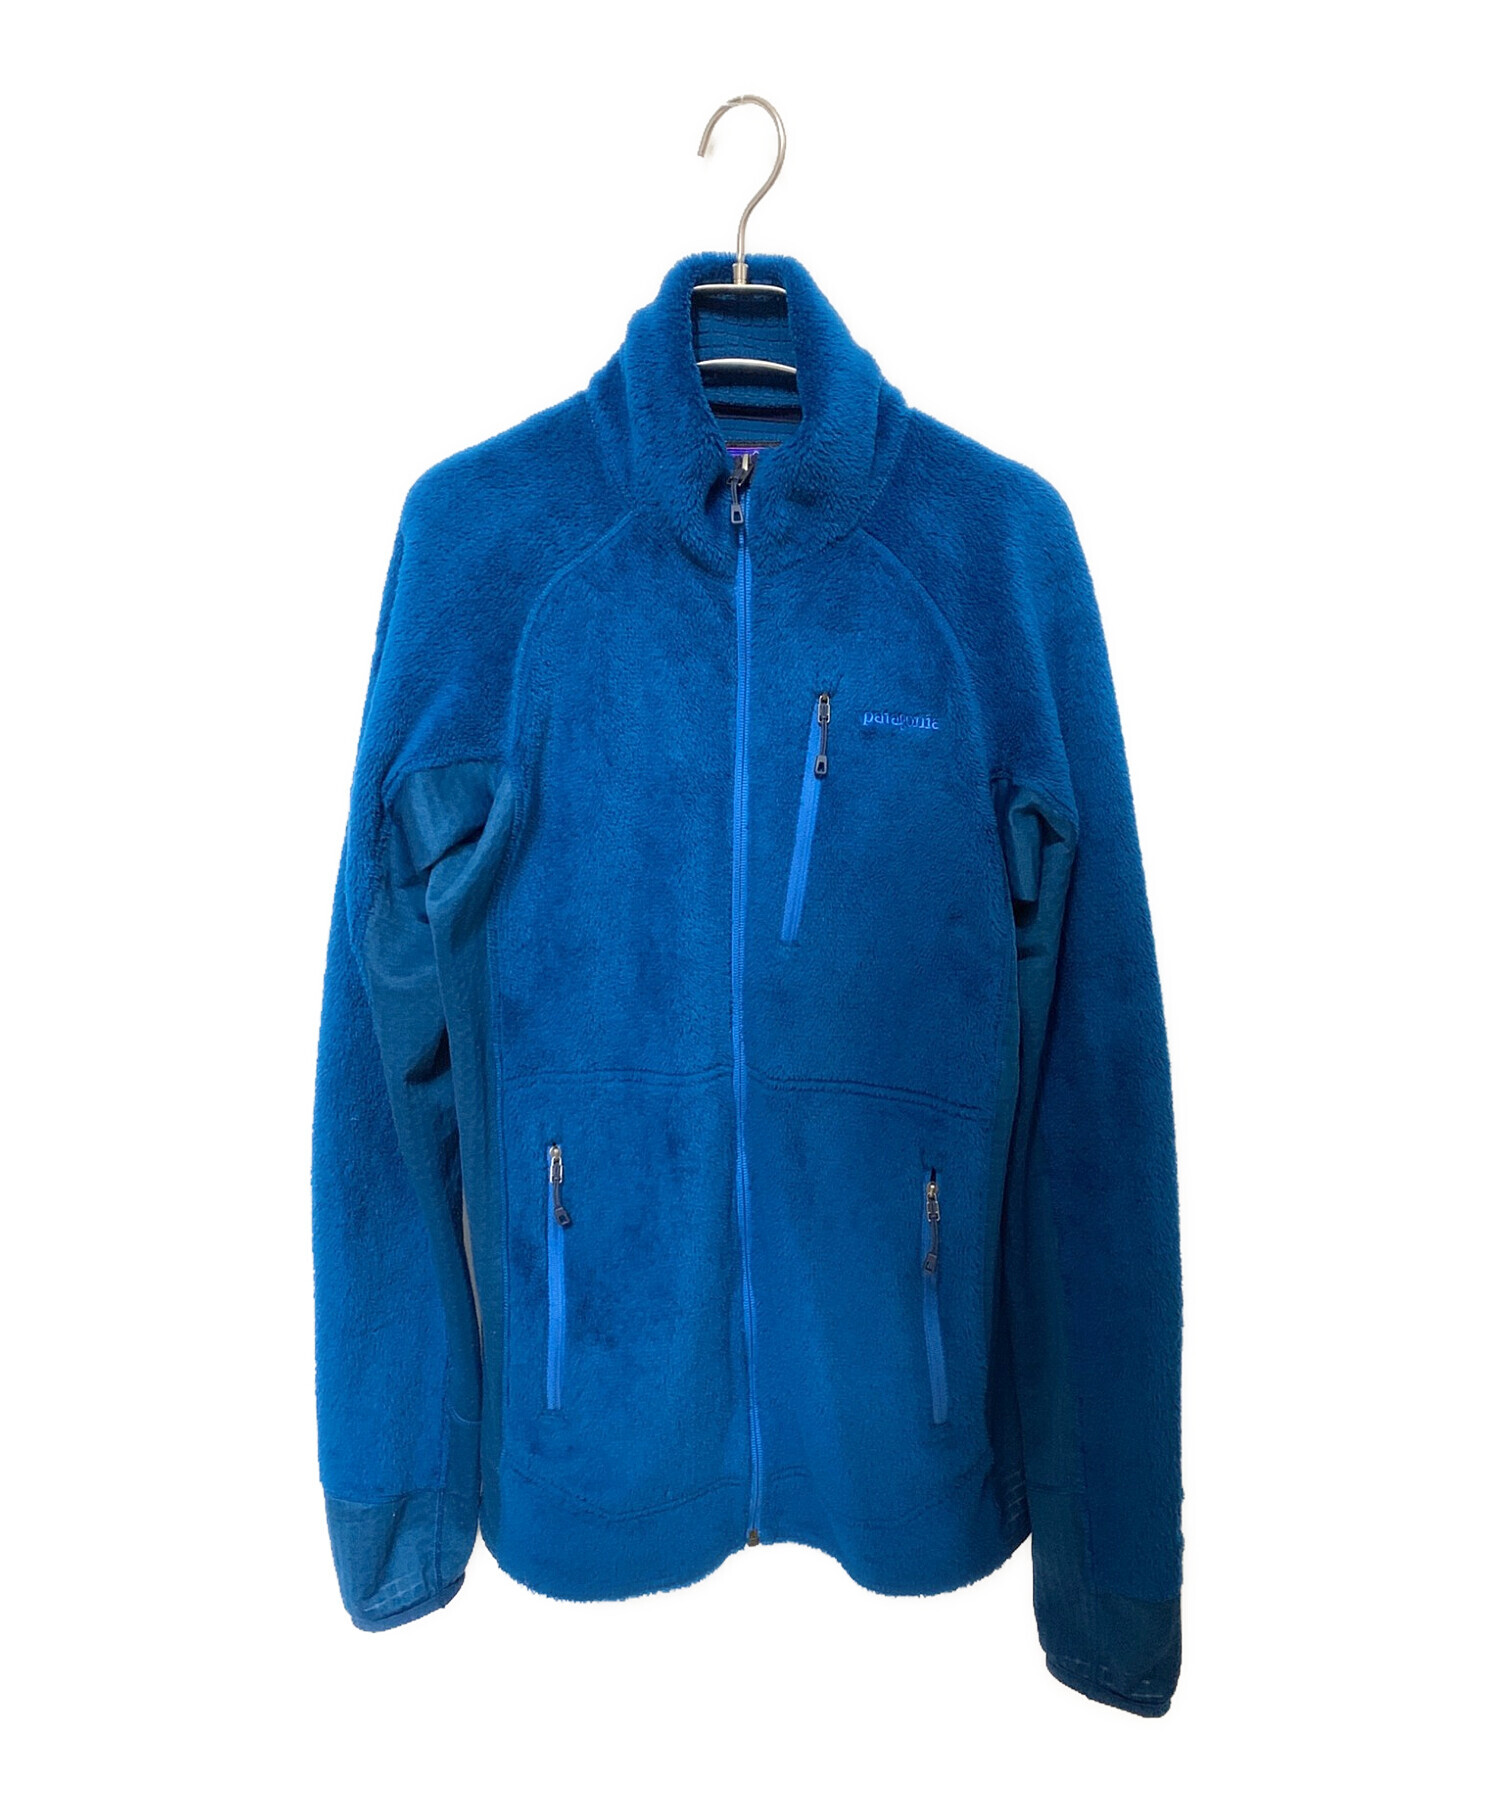 Patagonia (パタゴニア) R2フリースジャケット ブルー サイズ:M